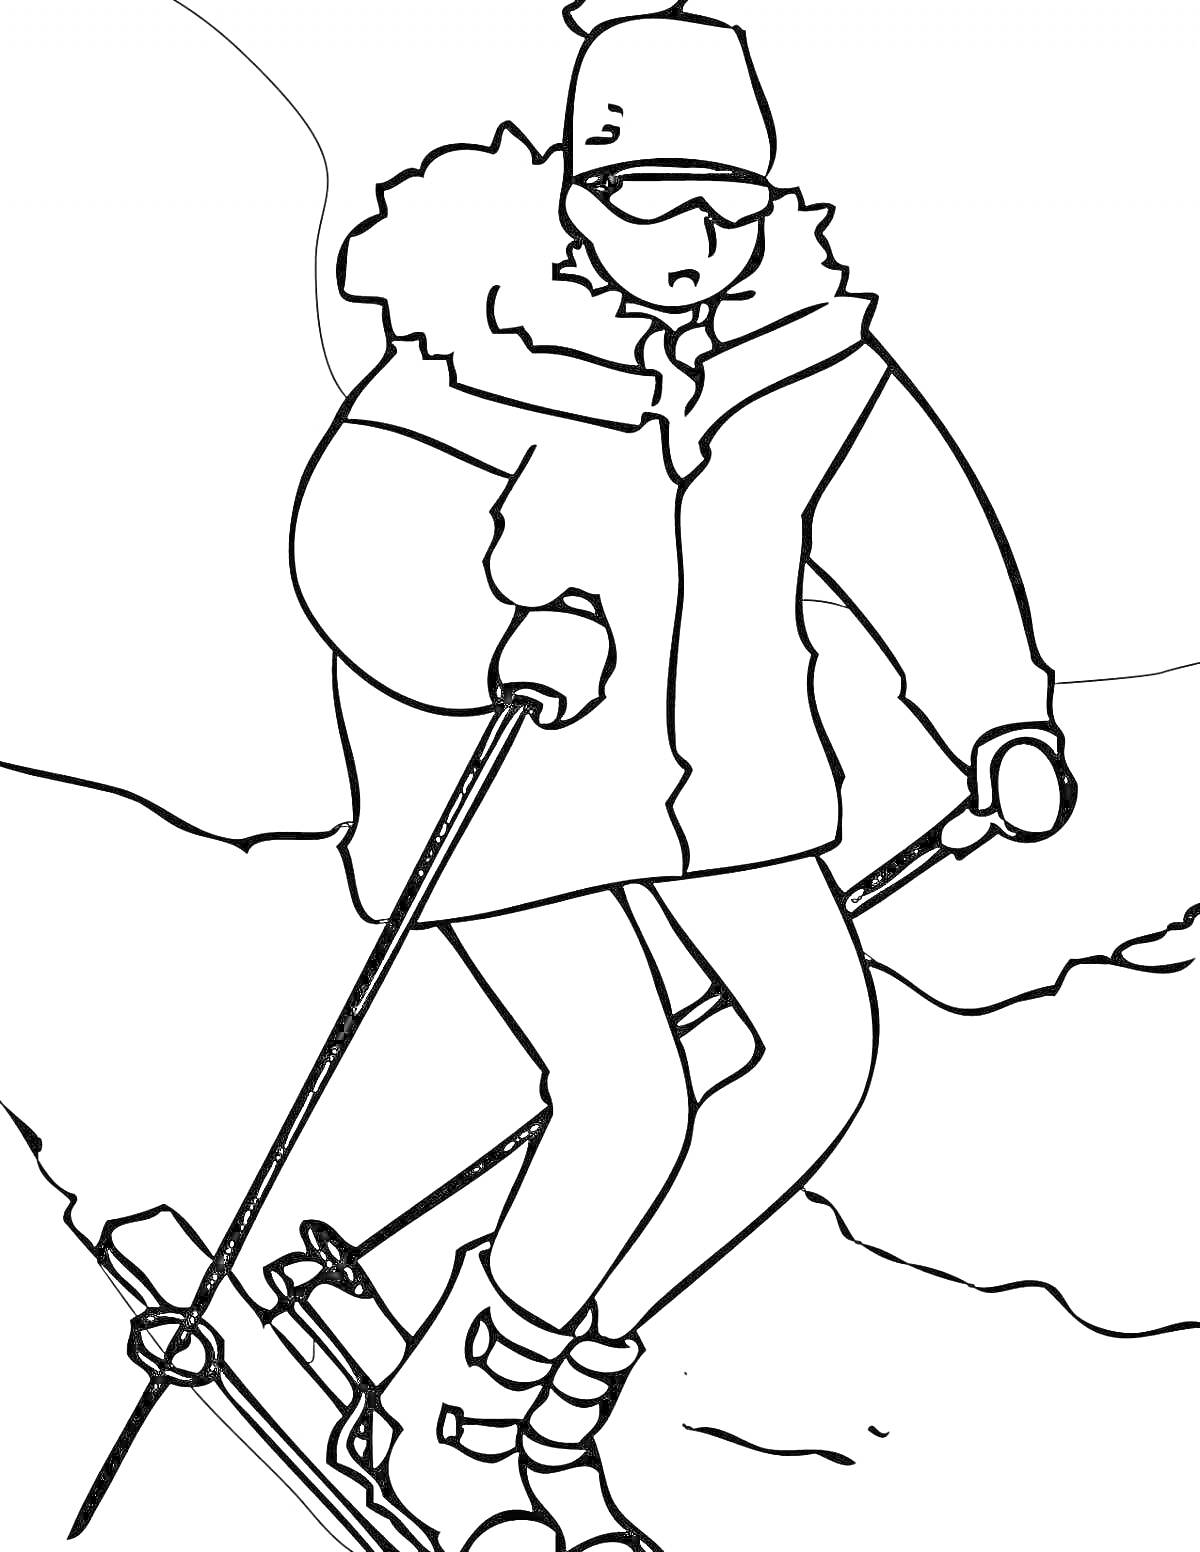 Раскраска Лыжник в зимней одежде на склоне с лыжными палками